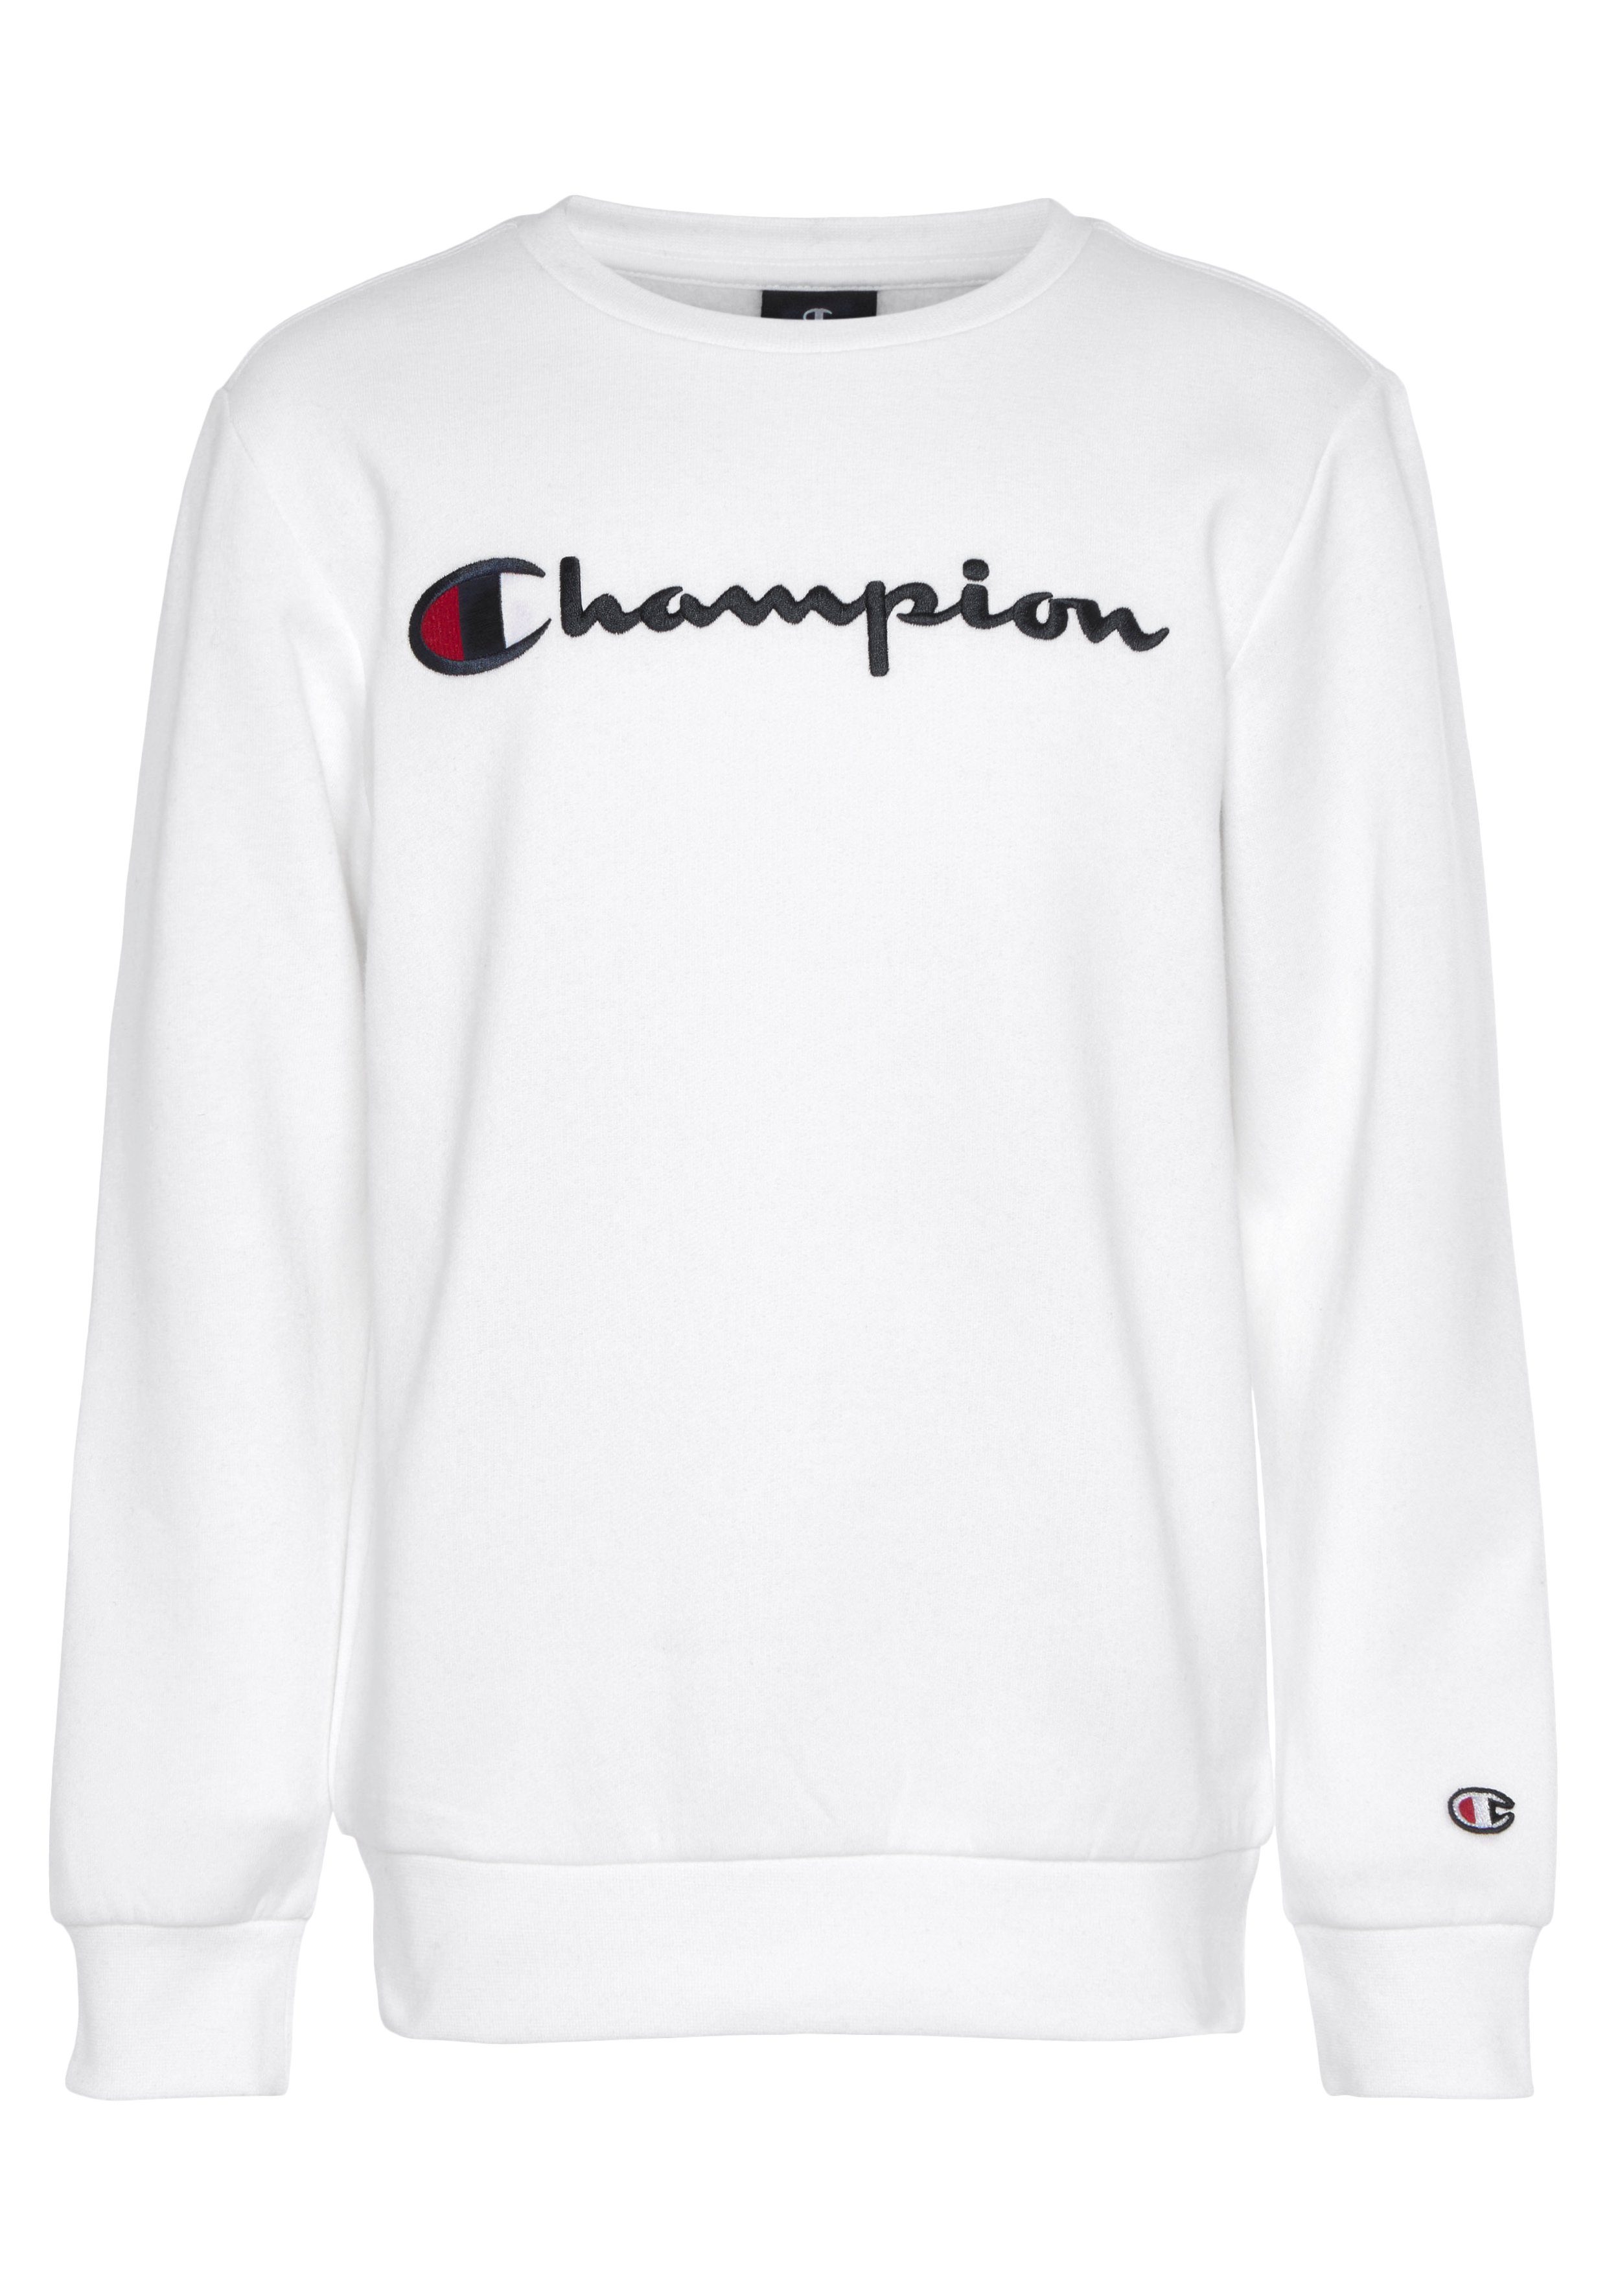 Netzsicher! Champion Sweatshirt Sweatshirt Classic Crewneck large Logo weiß Kinder - für